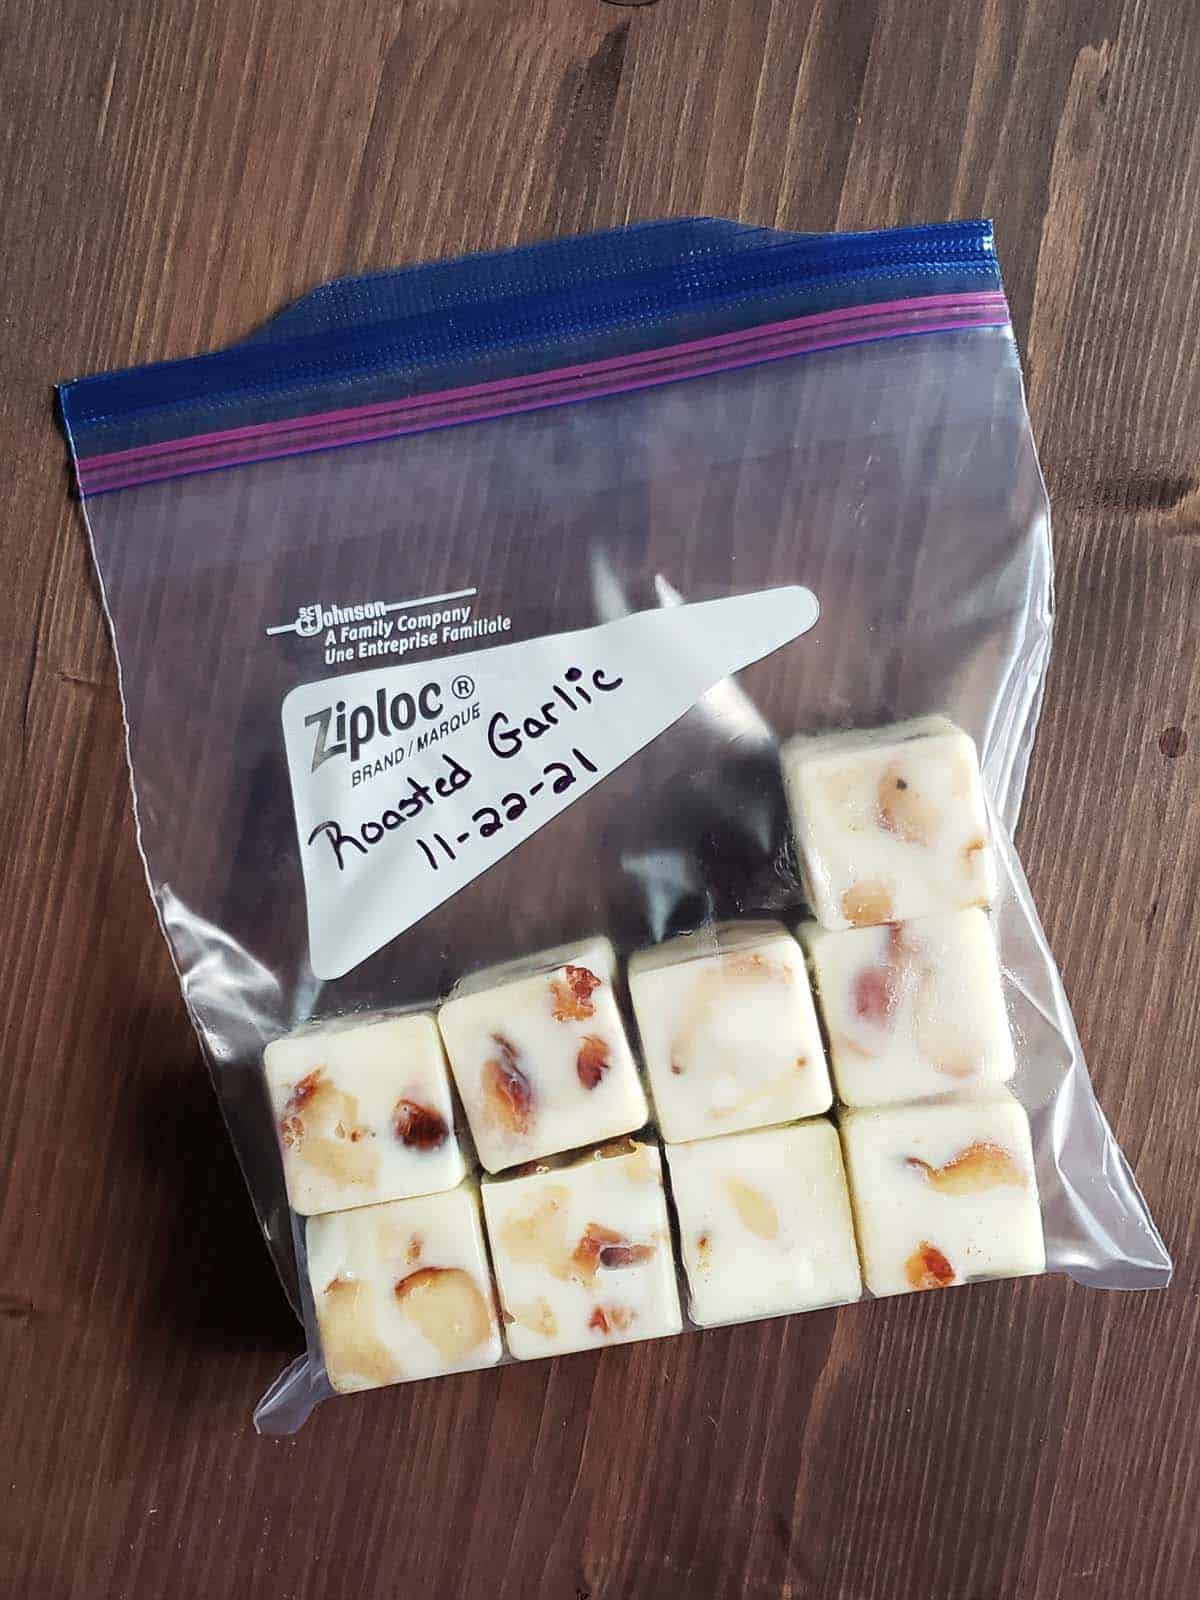 Frozen garlic cubes in a ziplock bag.